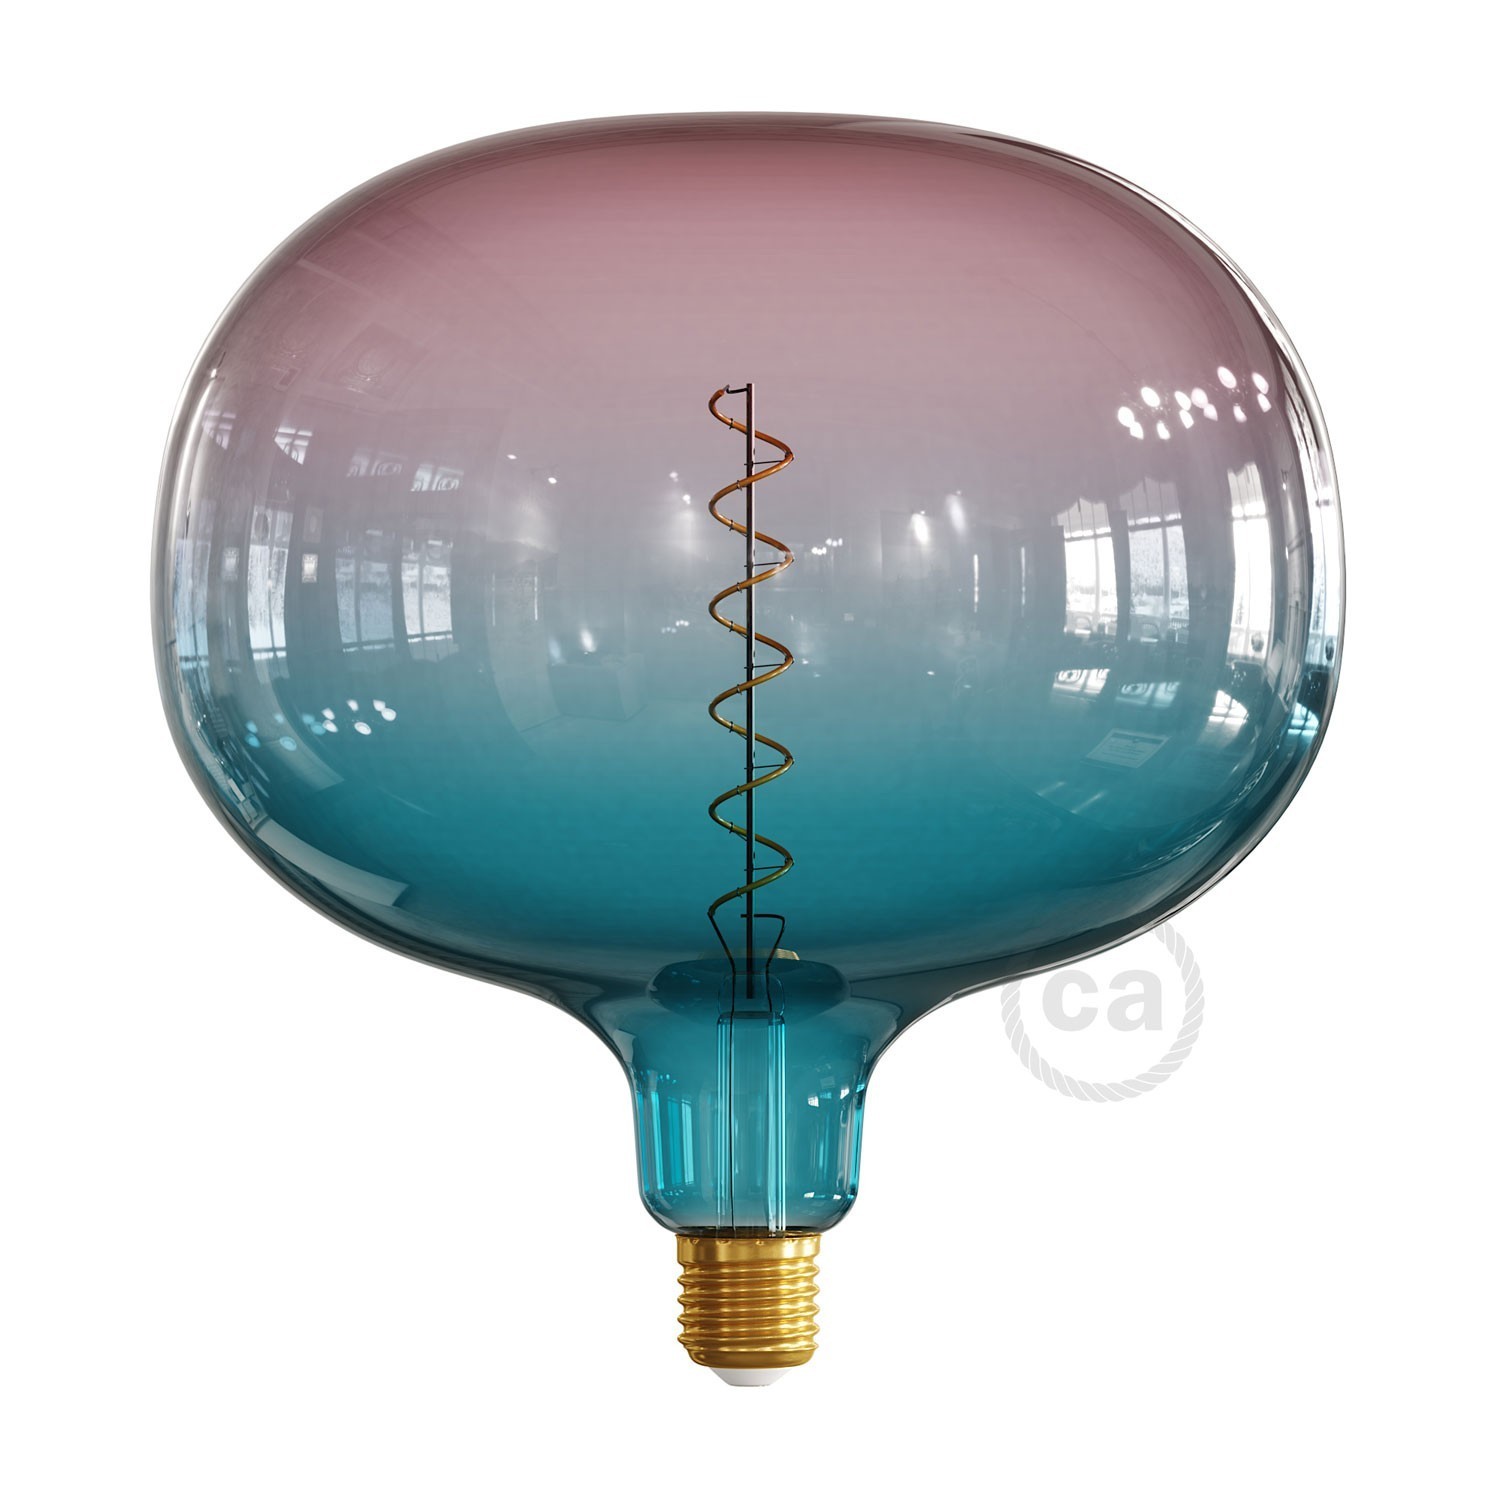 Ampoule LED XXL Cobble série Pastel, couleur Rêve (Dream), filament spirale 4W 100Lm E27 2200K Dimmable